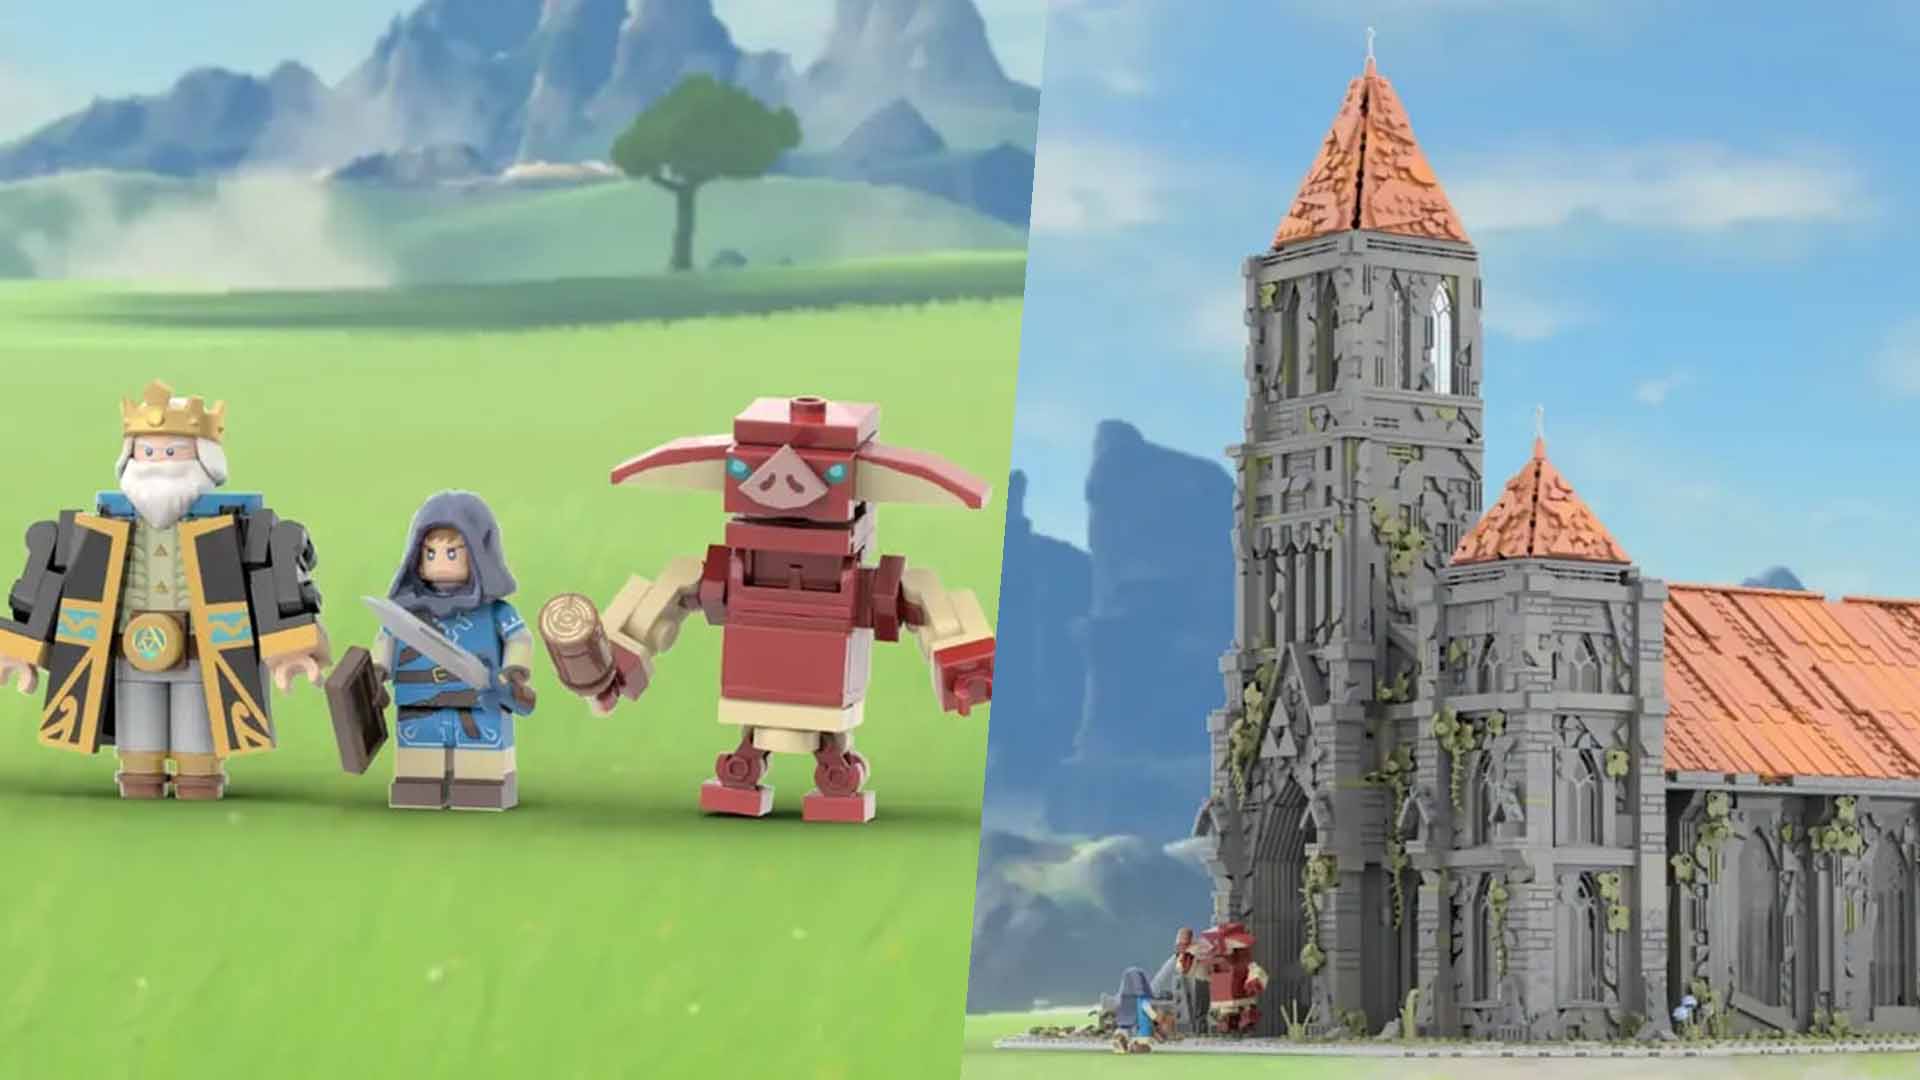 LEGO IDEAS - Hyrule Castle (The Legend of Zelda)